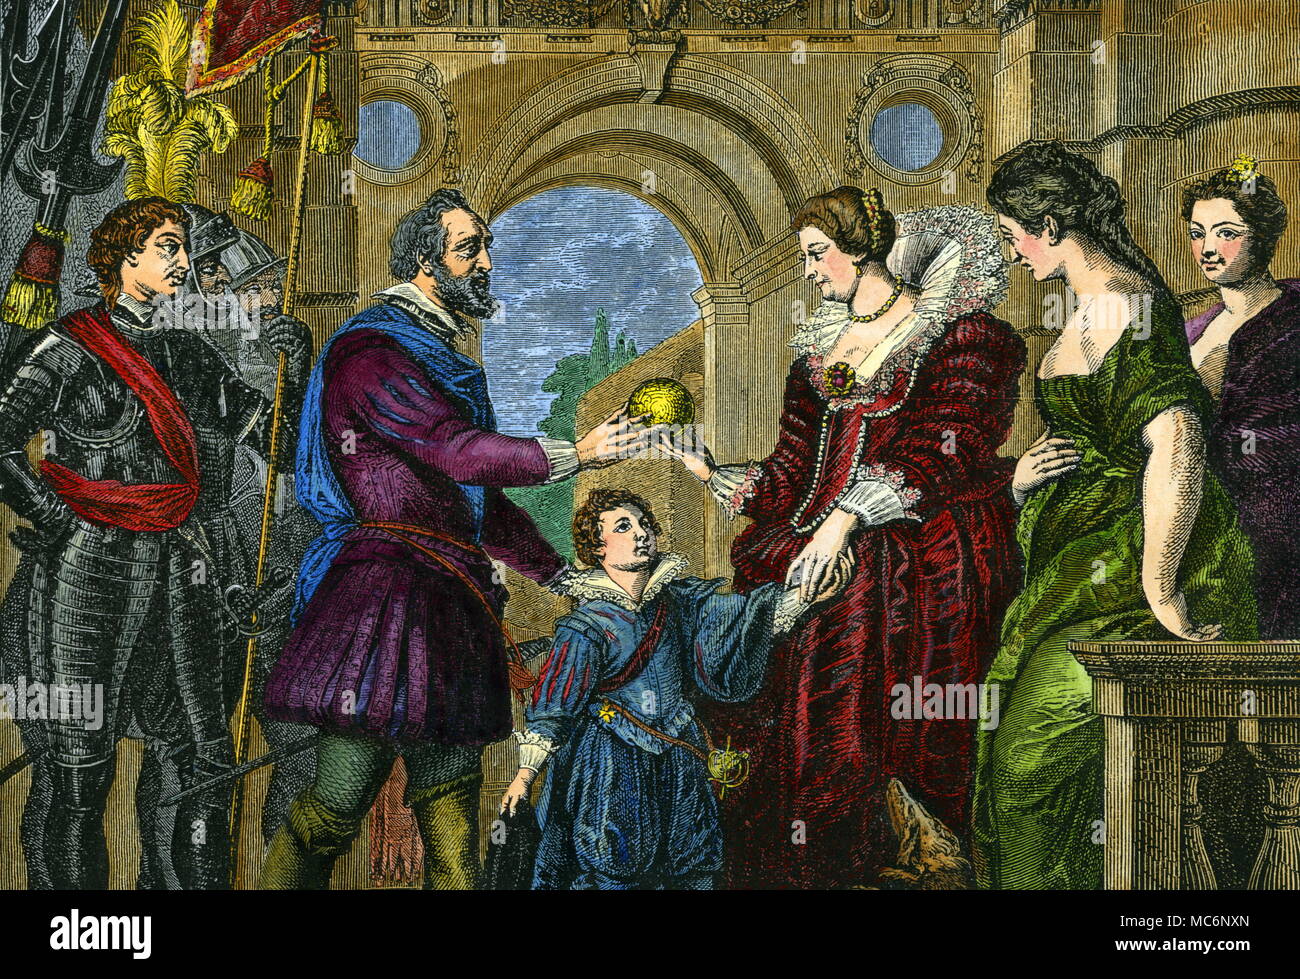 Henri IV. von Frankreich Vertrauen der Regierung von Frankreich zu seiner Frau, Marie de Medicis. Als Kind, Henri hatte Nostradamus erfüllt: Er war Gegenstand einer Reihe von prophetischen Vierzeilern des Sehers. Diese Gravur ist nach einem Gemälde von Rubens im Louvre. Stockfoto